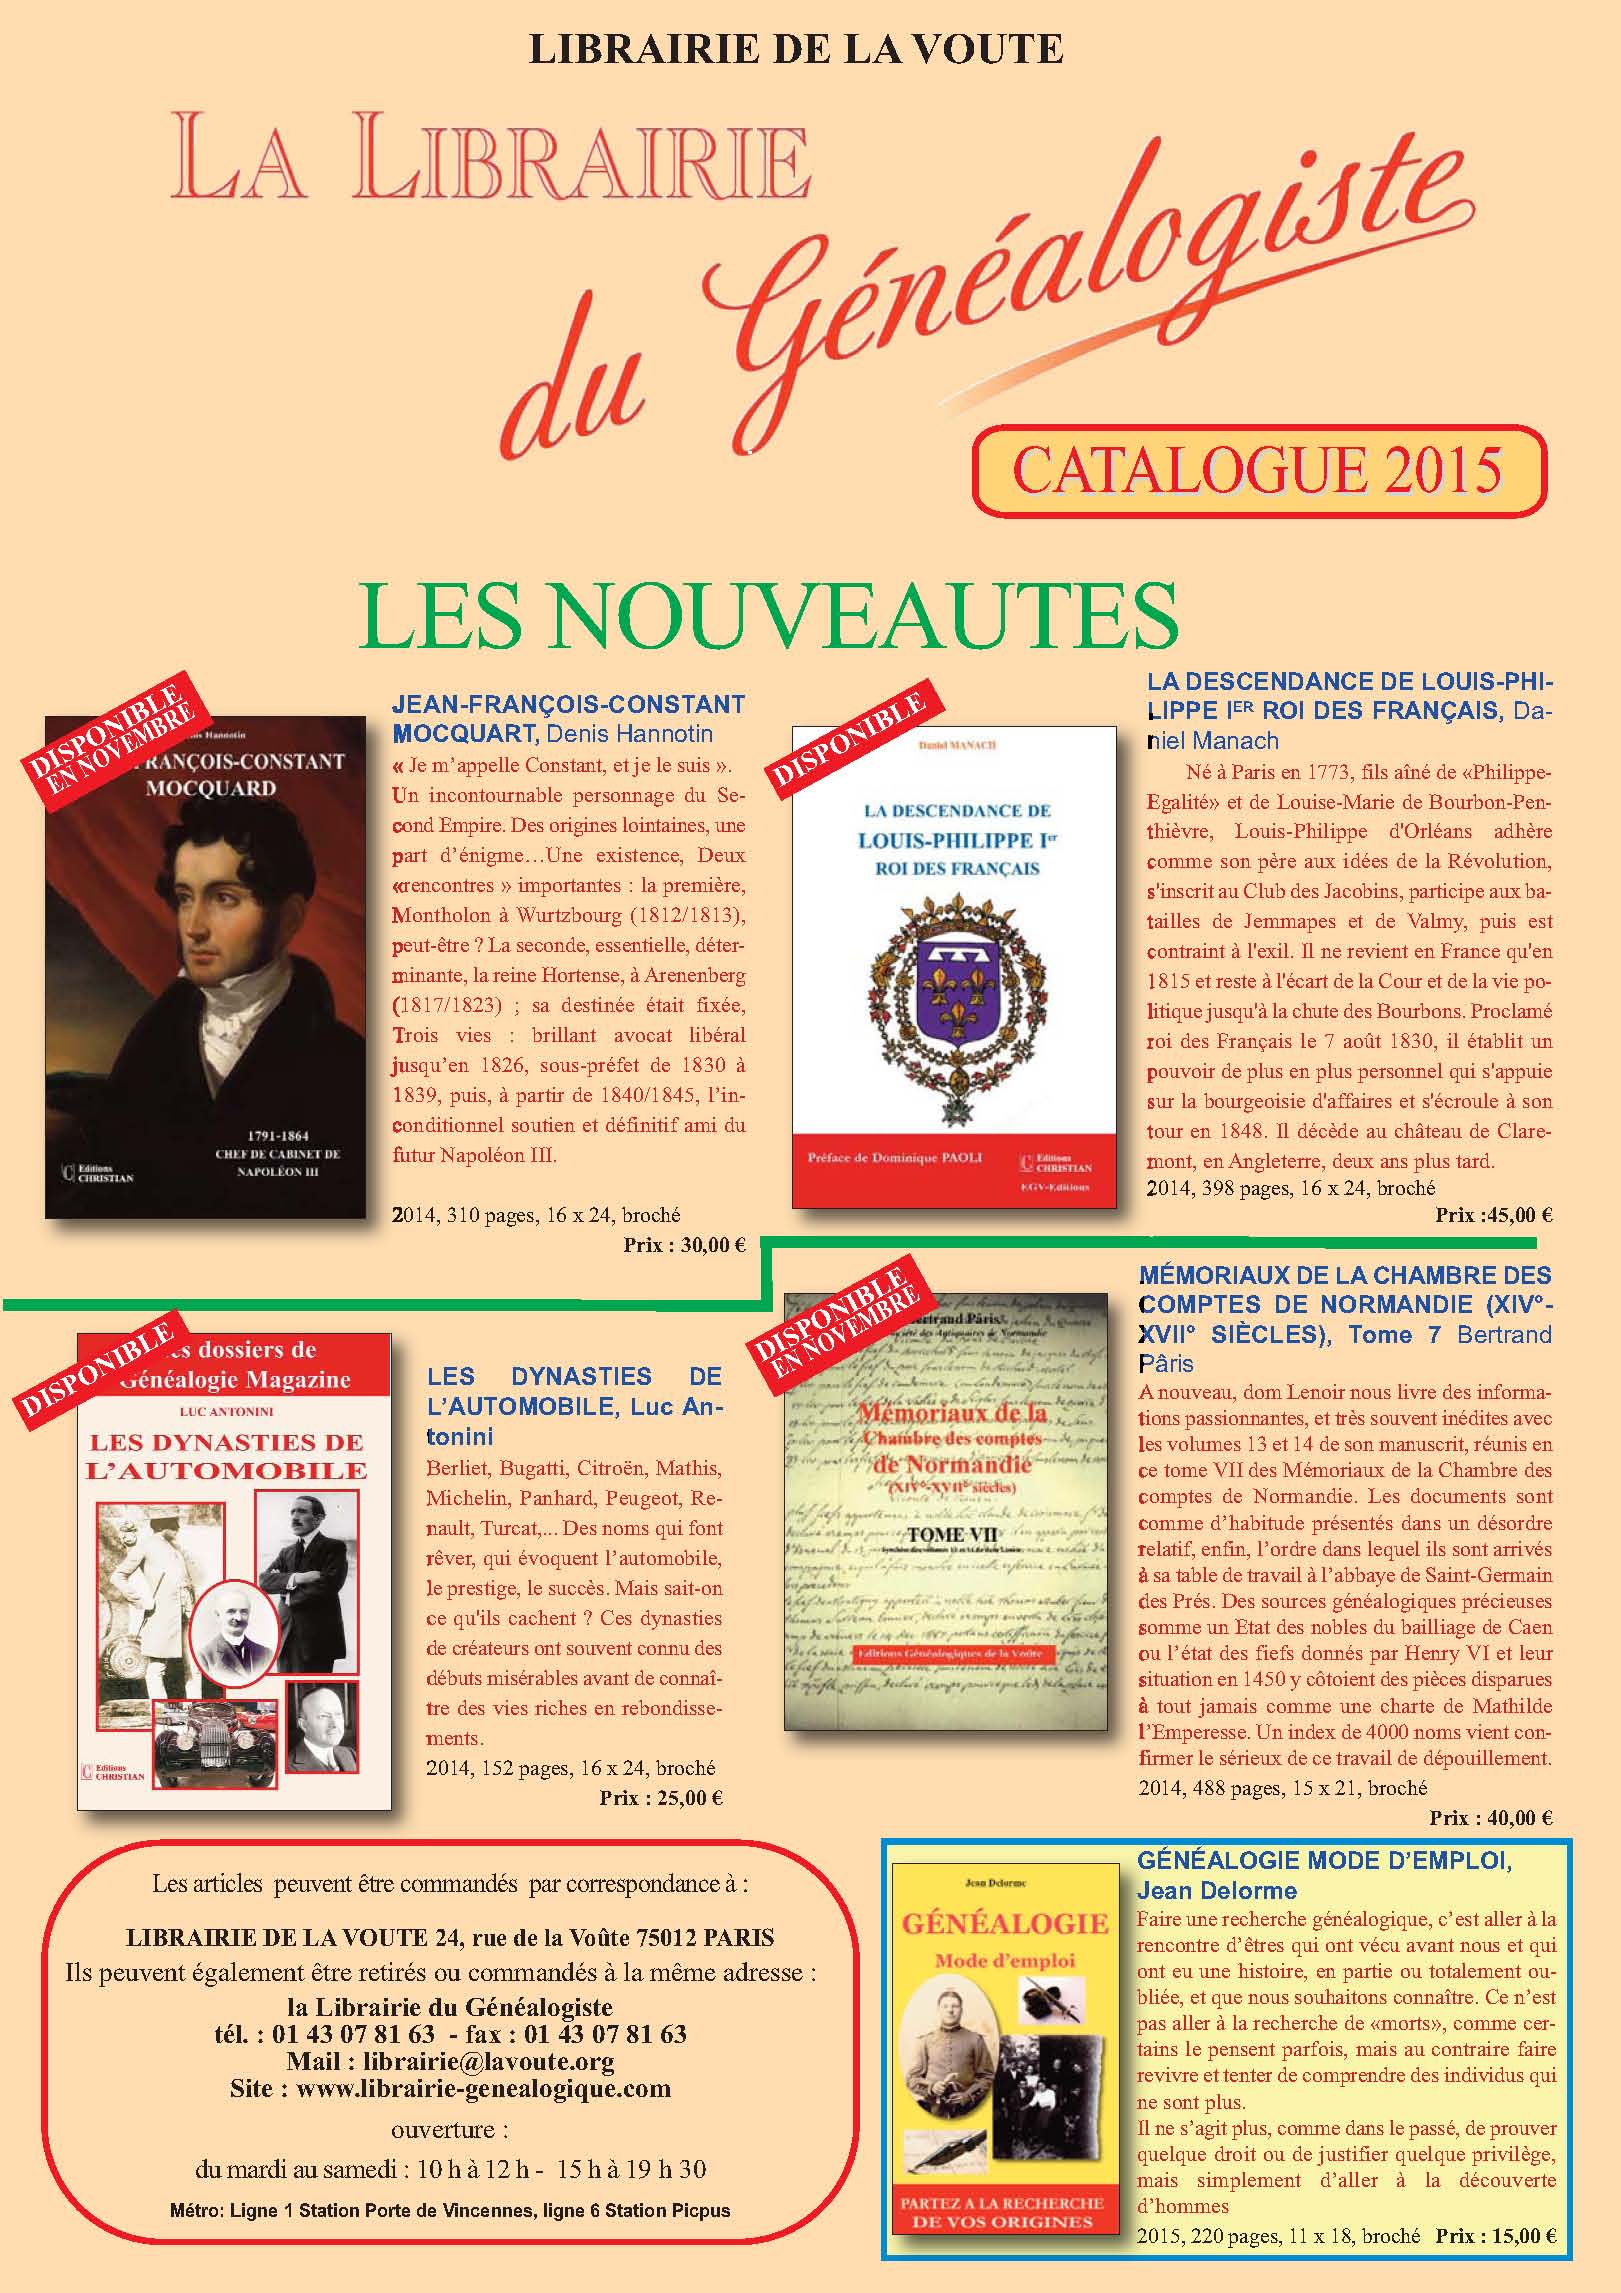 Couverture catalogue 2014